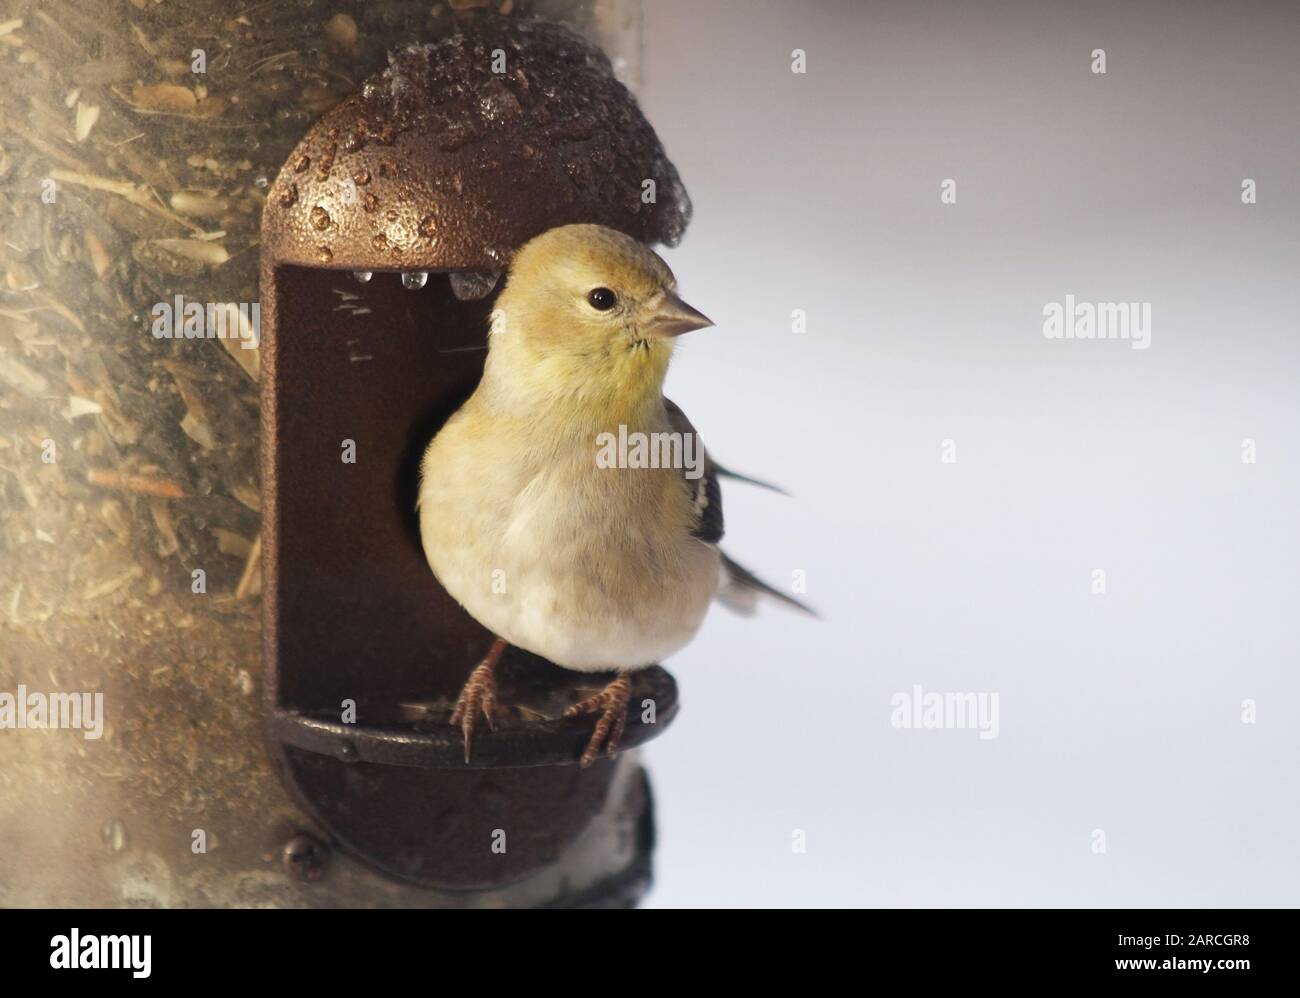 Une petite finch jaune perchée sur un oiseau en métal rempli de graines Banque D'Images